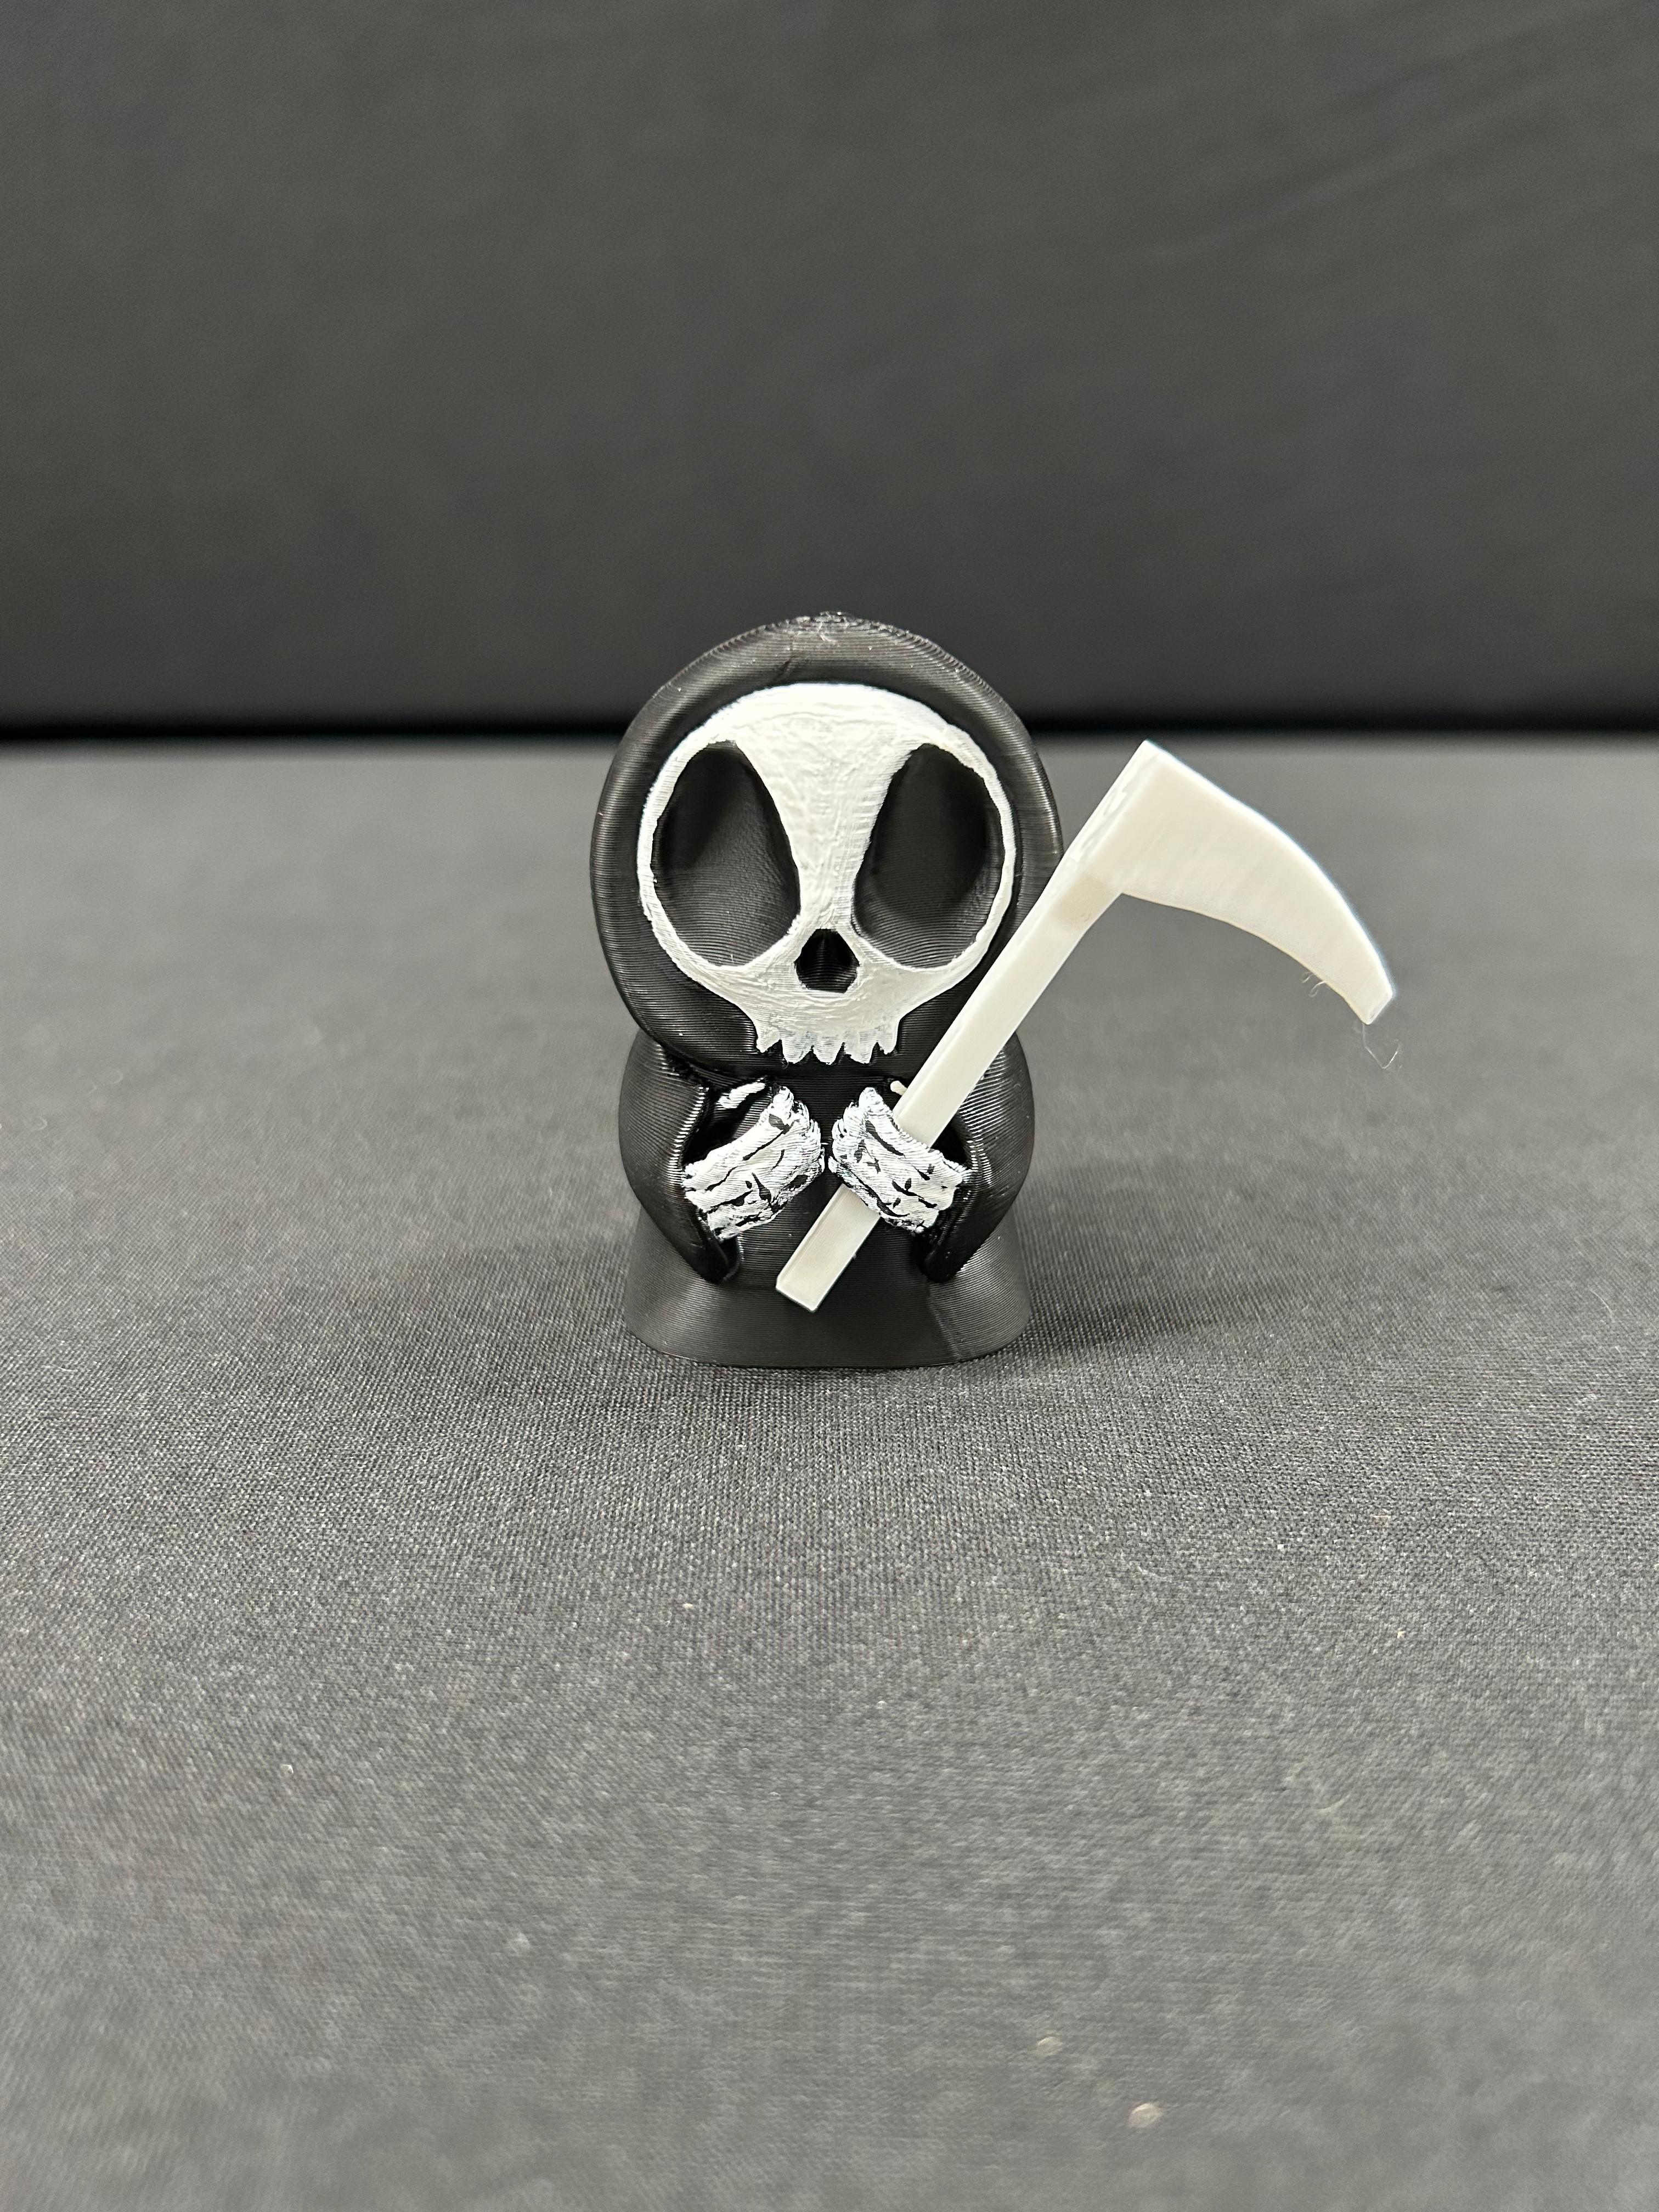 Grim Reaper Note Holder 3 3d model